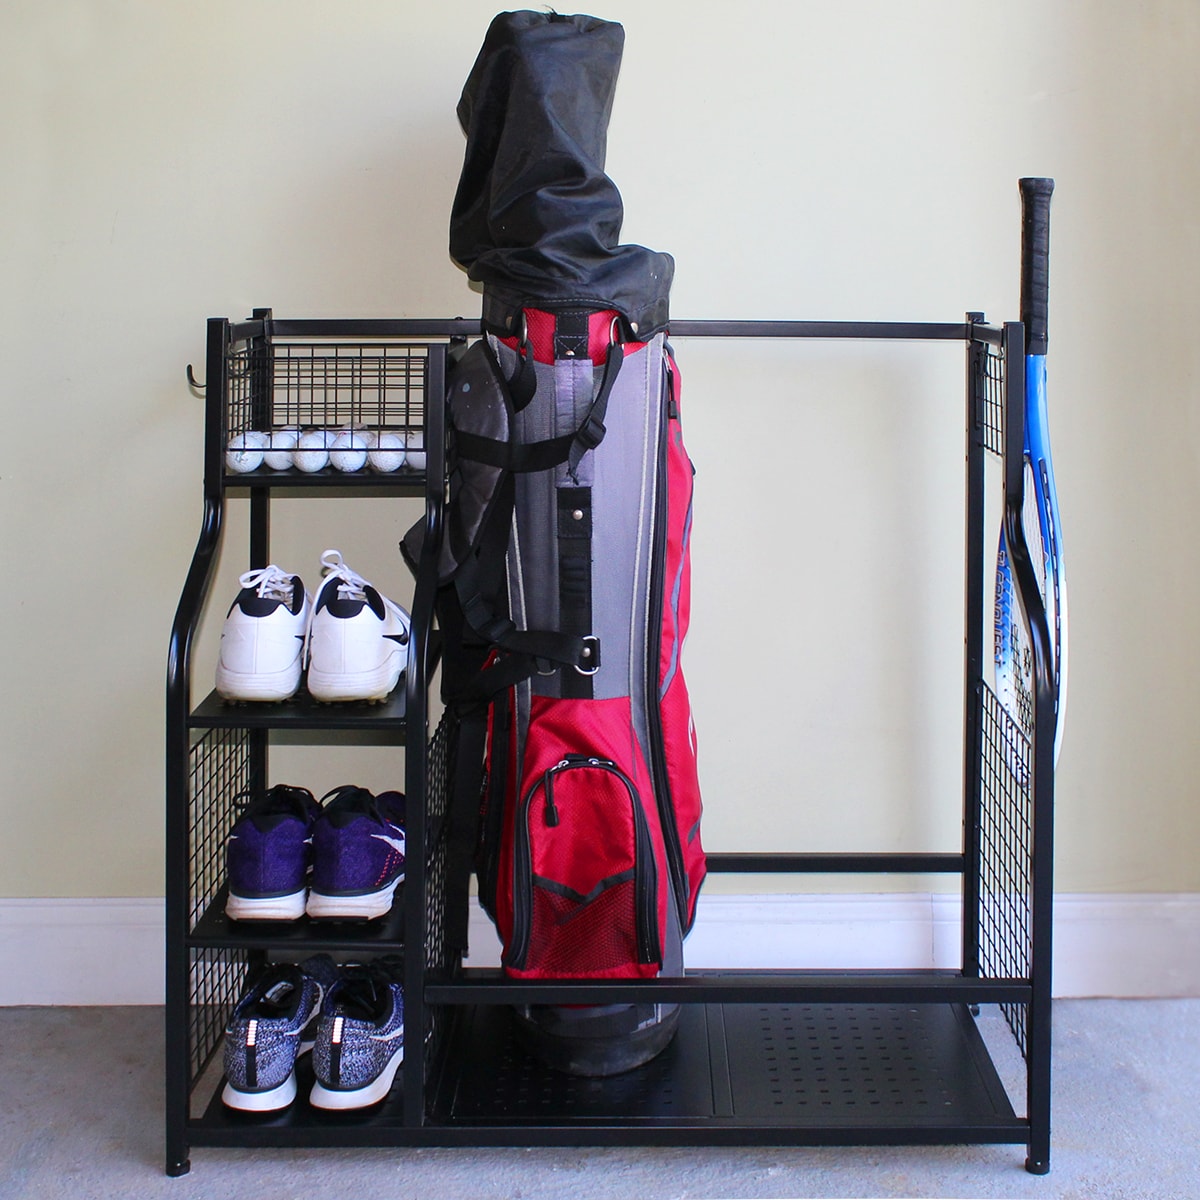 Best Golf Bag Organizer & Storage Rack For Home & Garage